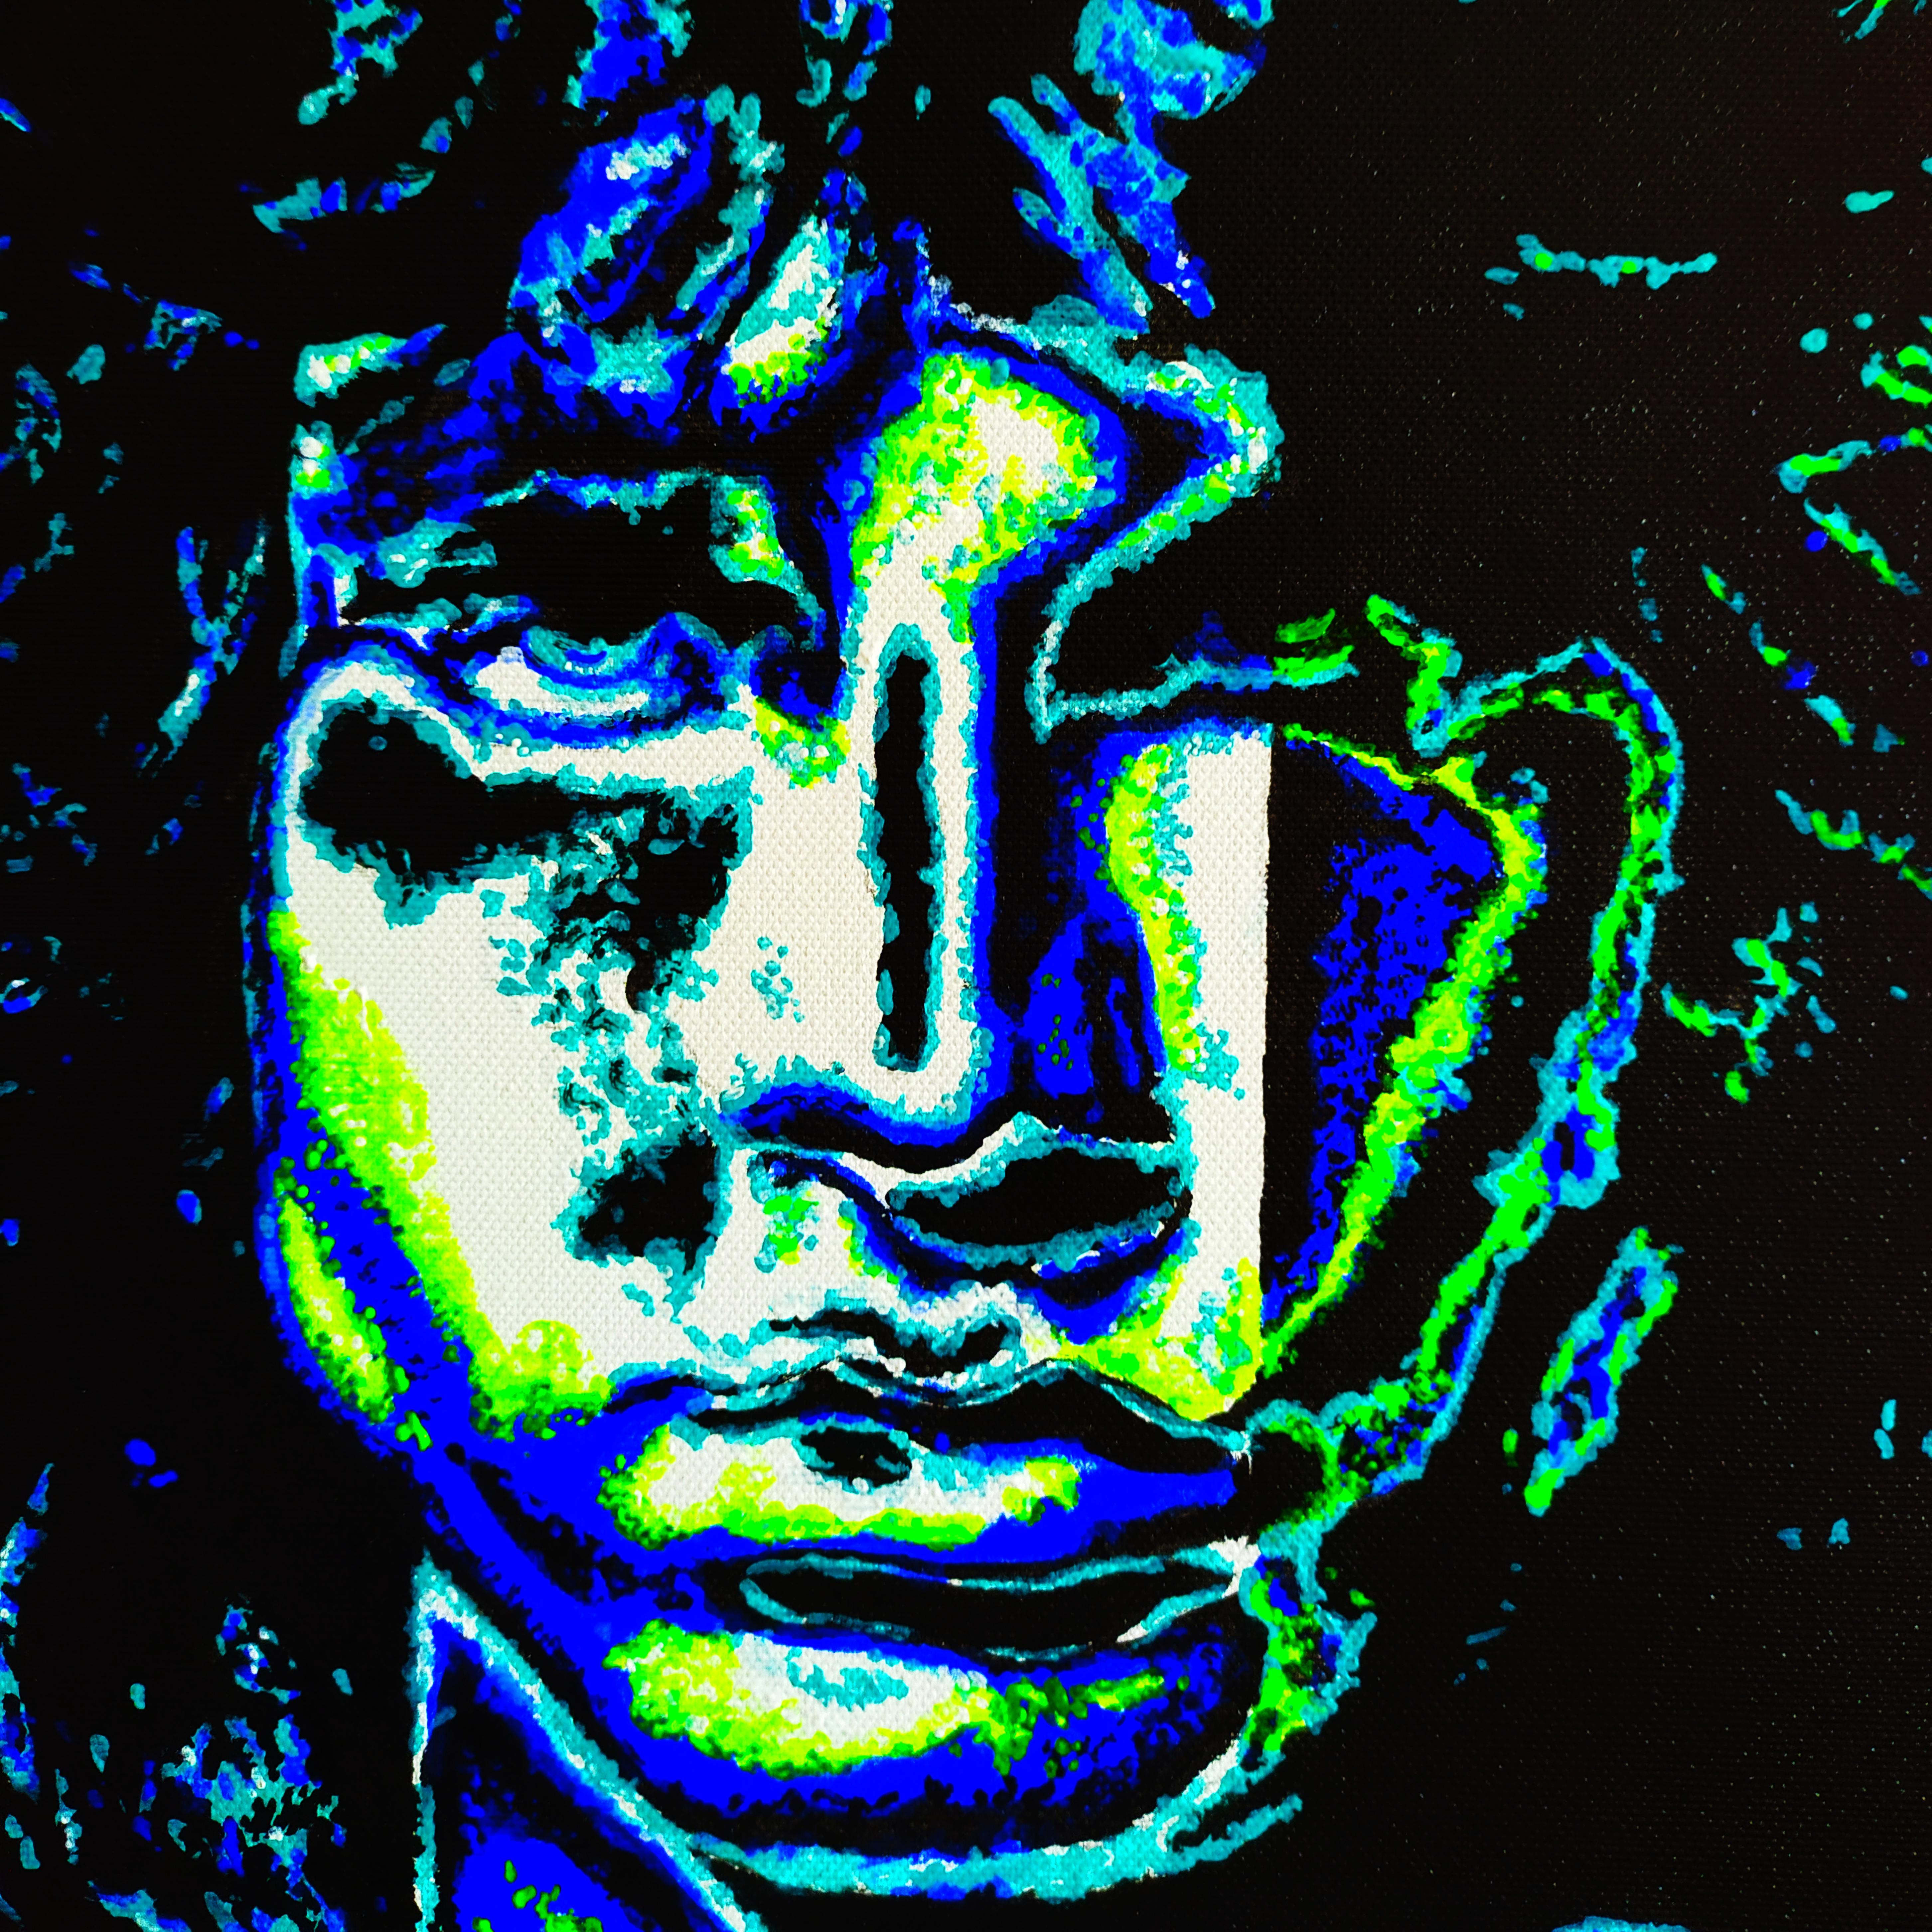 Jim Morrison, Le Shaman rose - Peinture de portrait rose, noir, bleu, vert et blanc - Pop Art Painting par Alexandar Inchovski